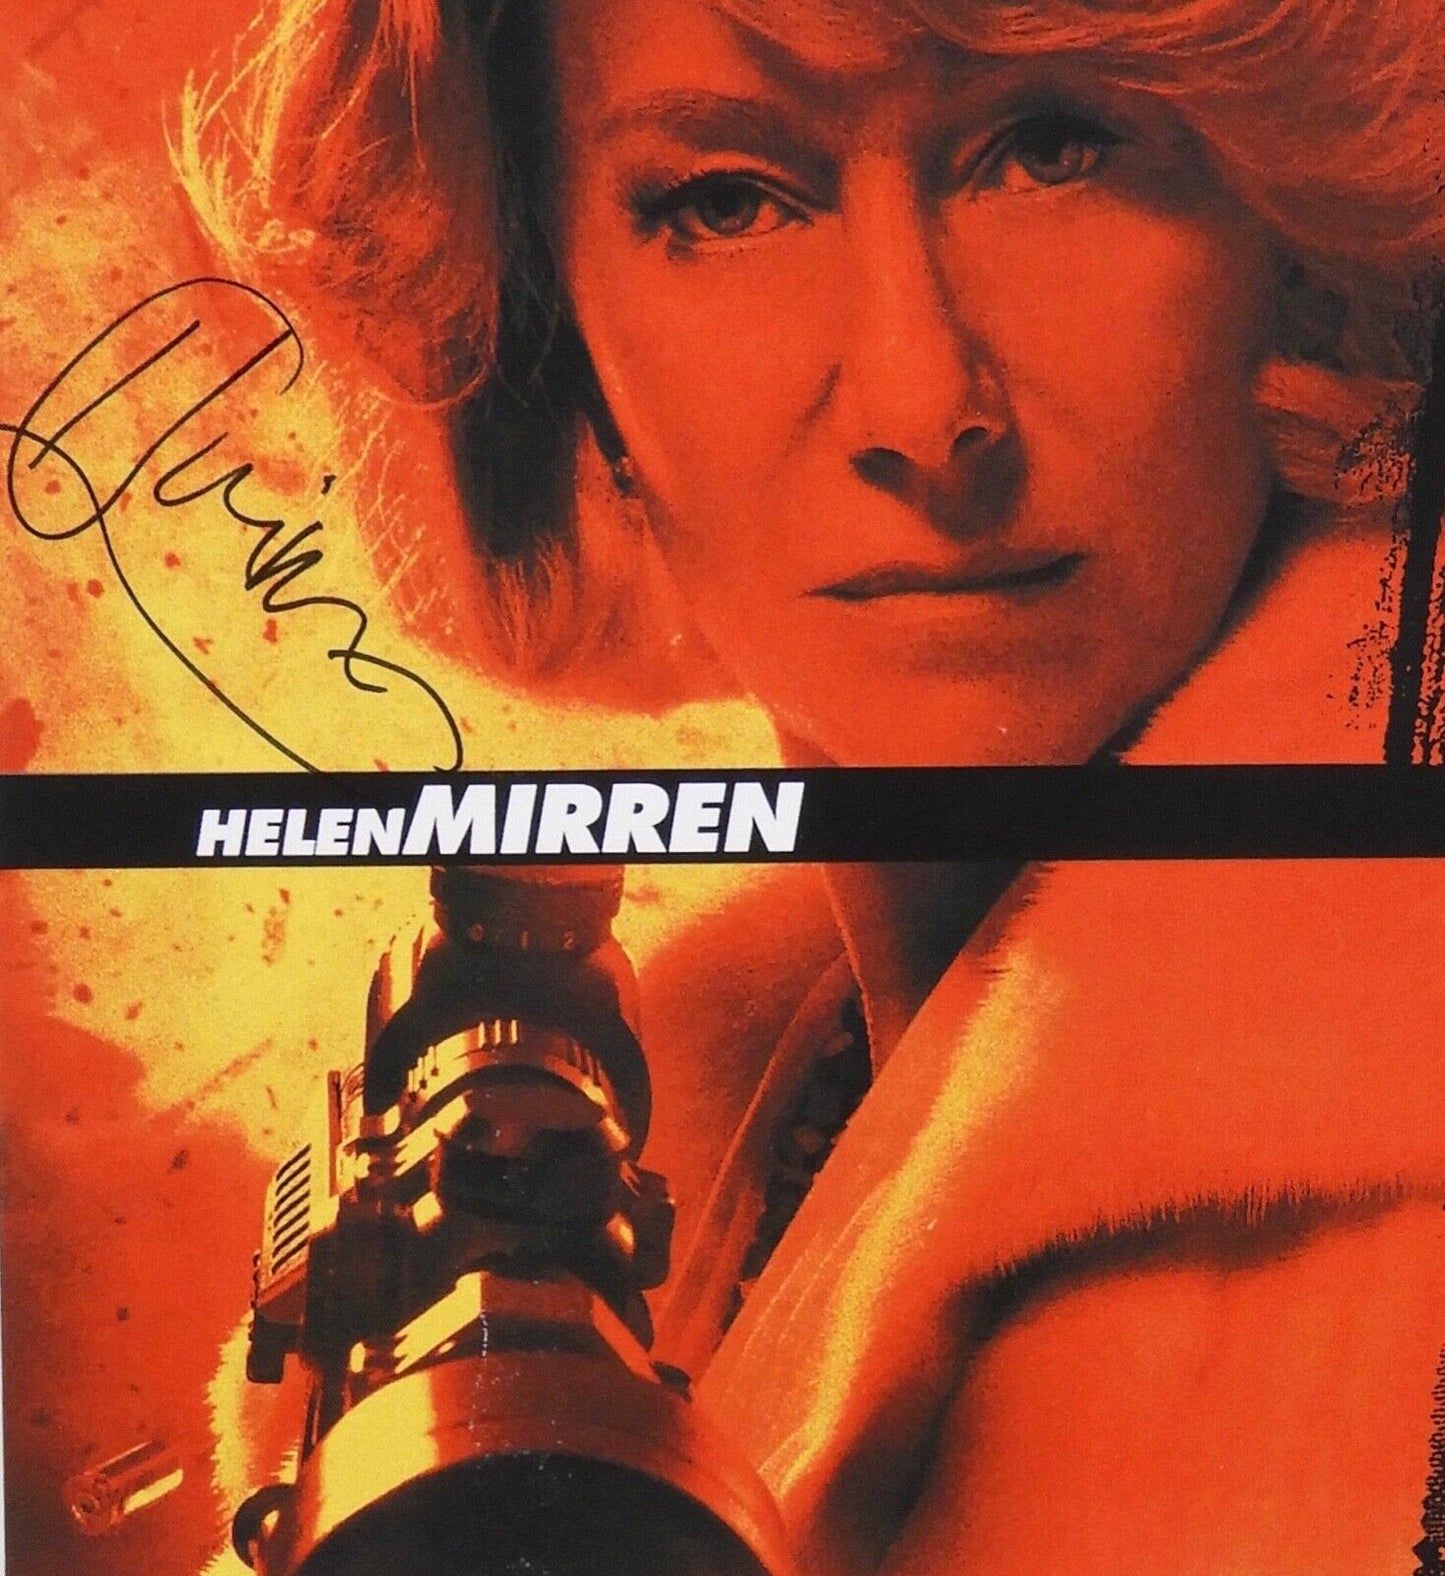 RED Helen Mirren Autograph JSA 11 x 17 Signed Photo